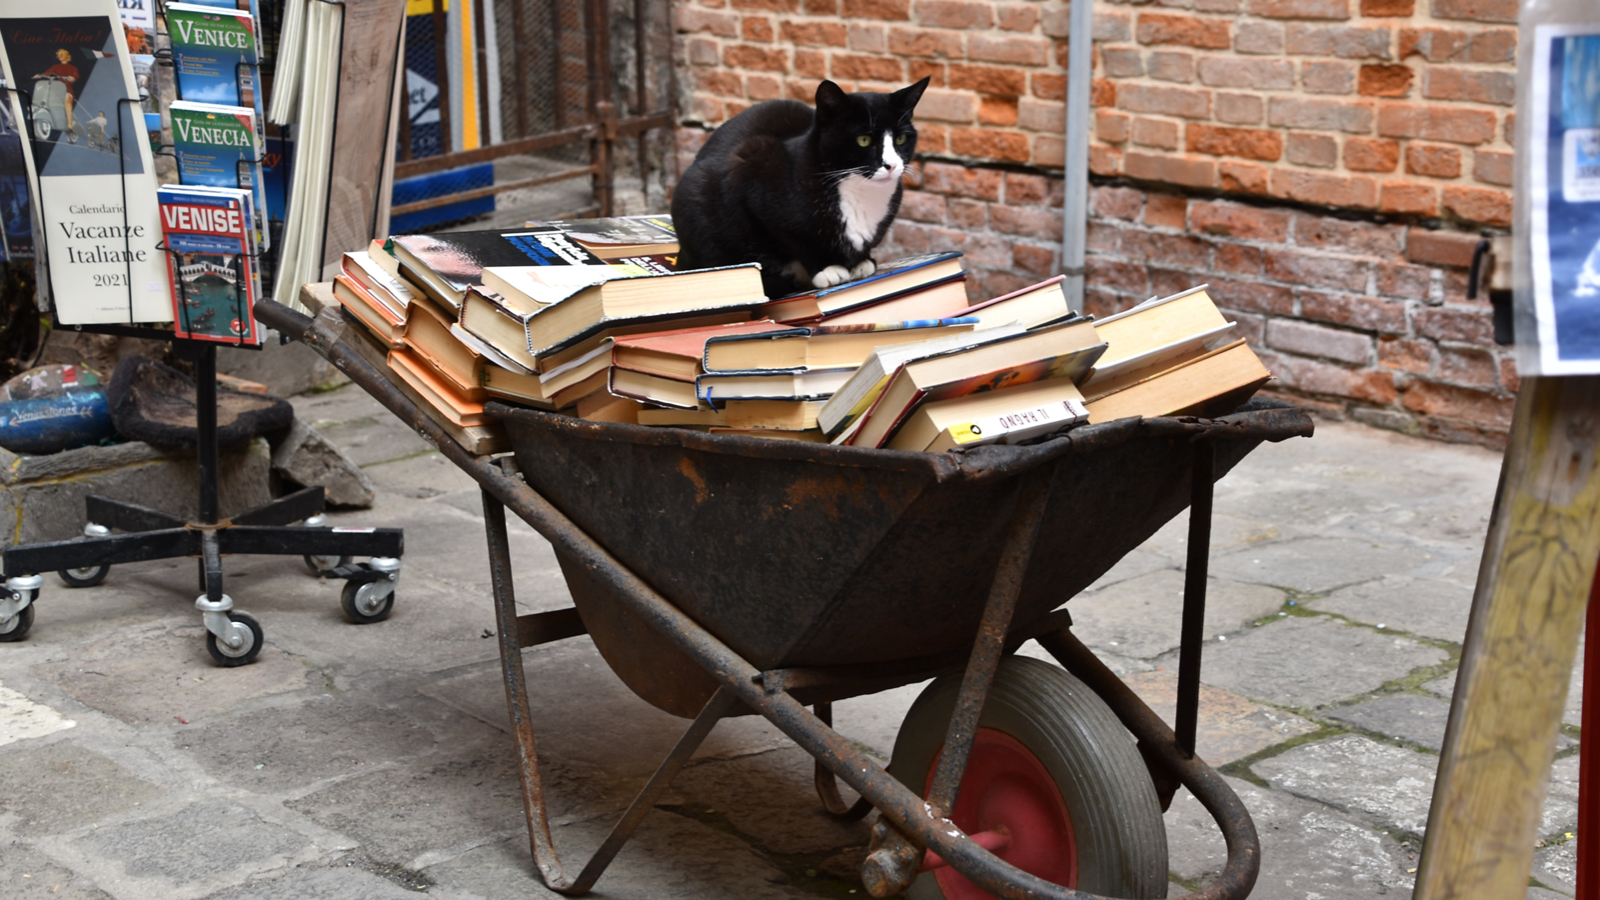 Da li ste čuli da postoji Mačak koji je spasao knjige?